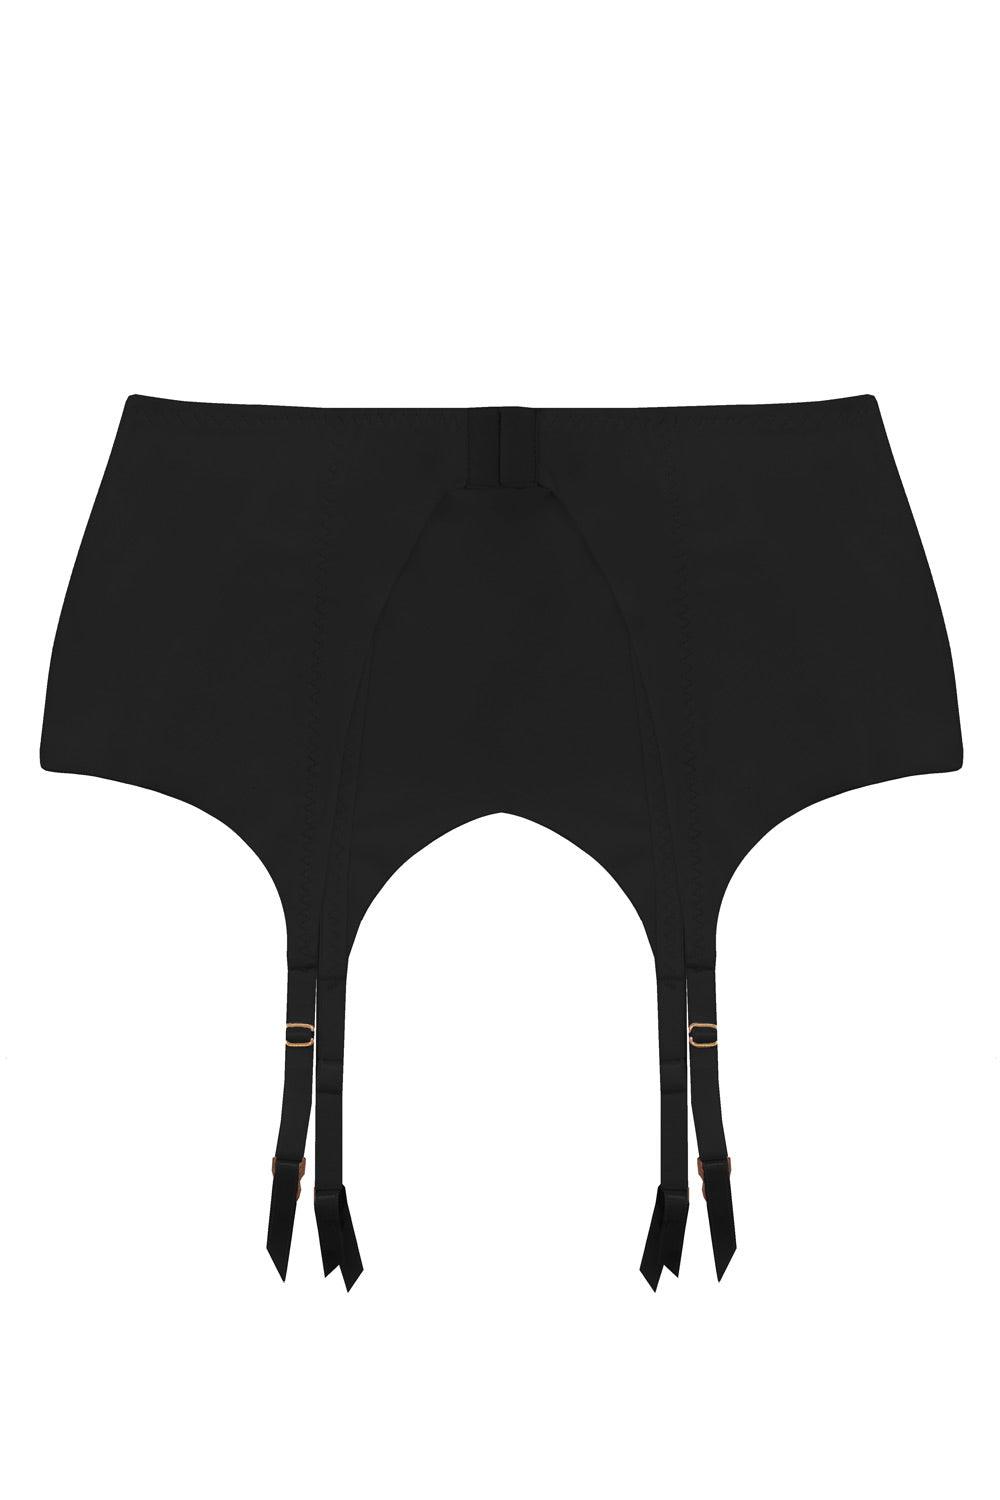 Basic black set: garter belt+seamless brazilian+stockings - yesUndress